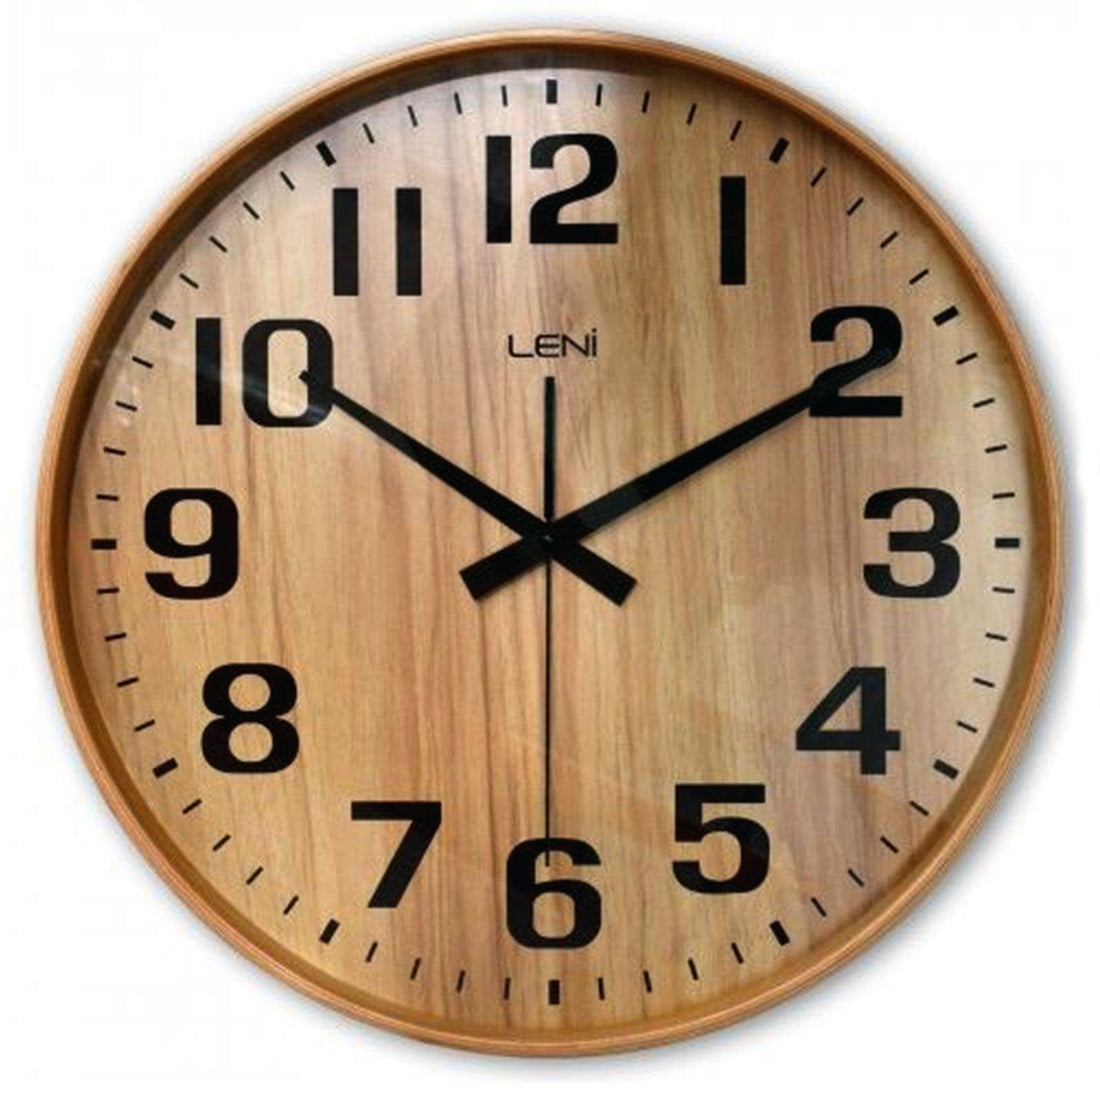 40cm Leni Wood Wall Clock - Nature.